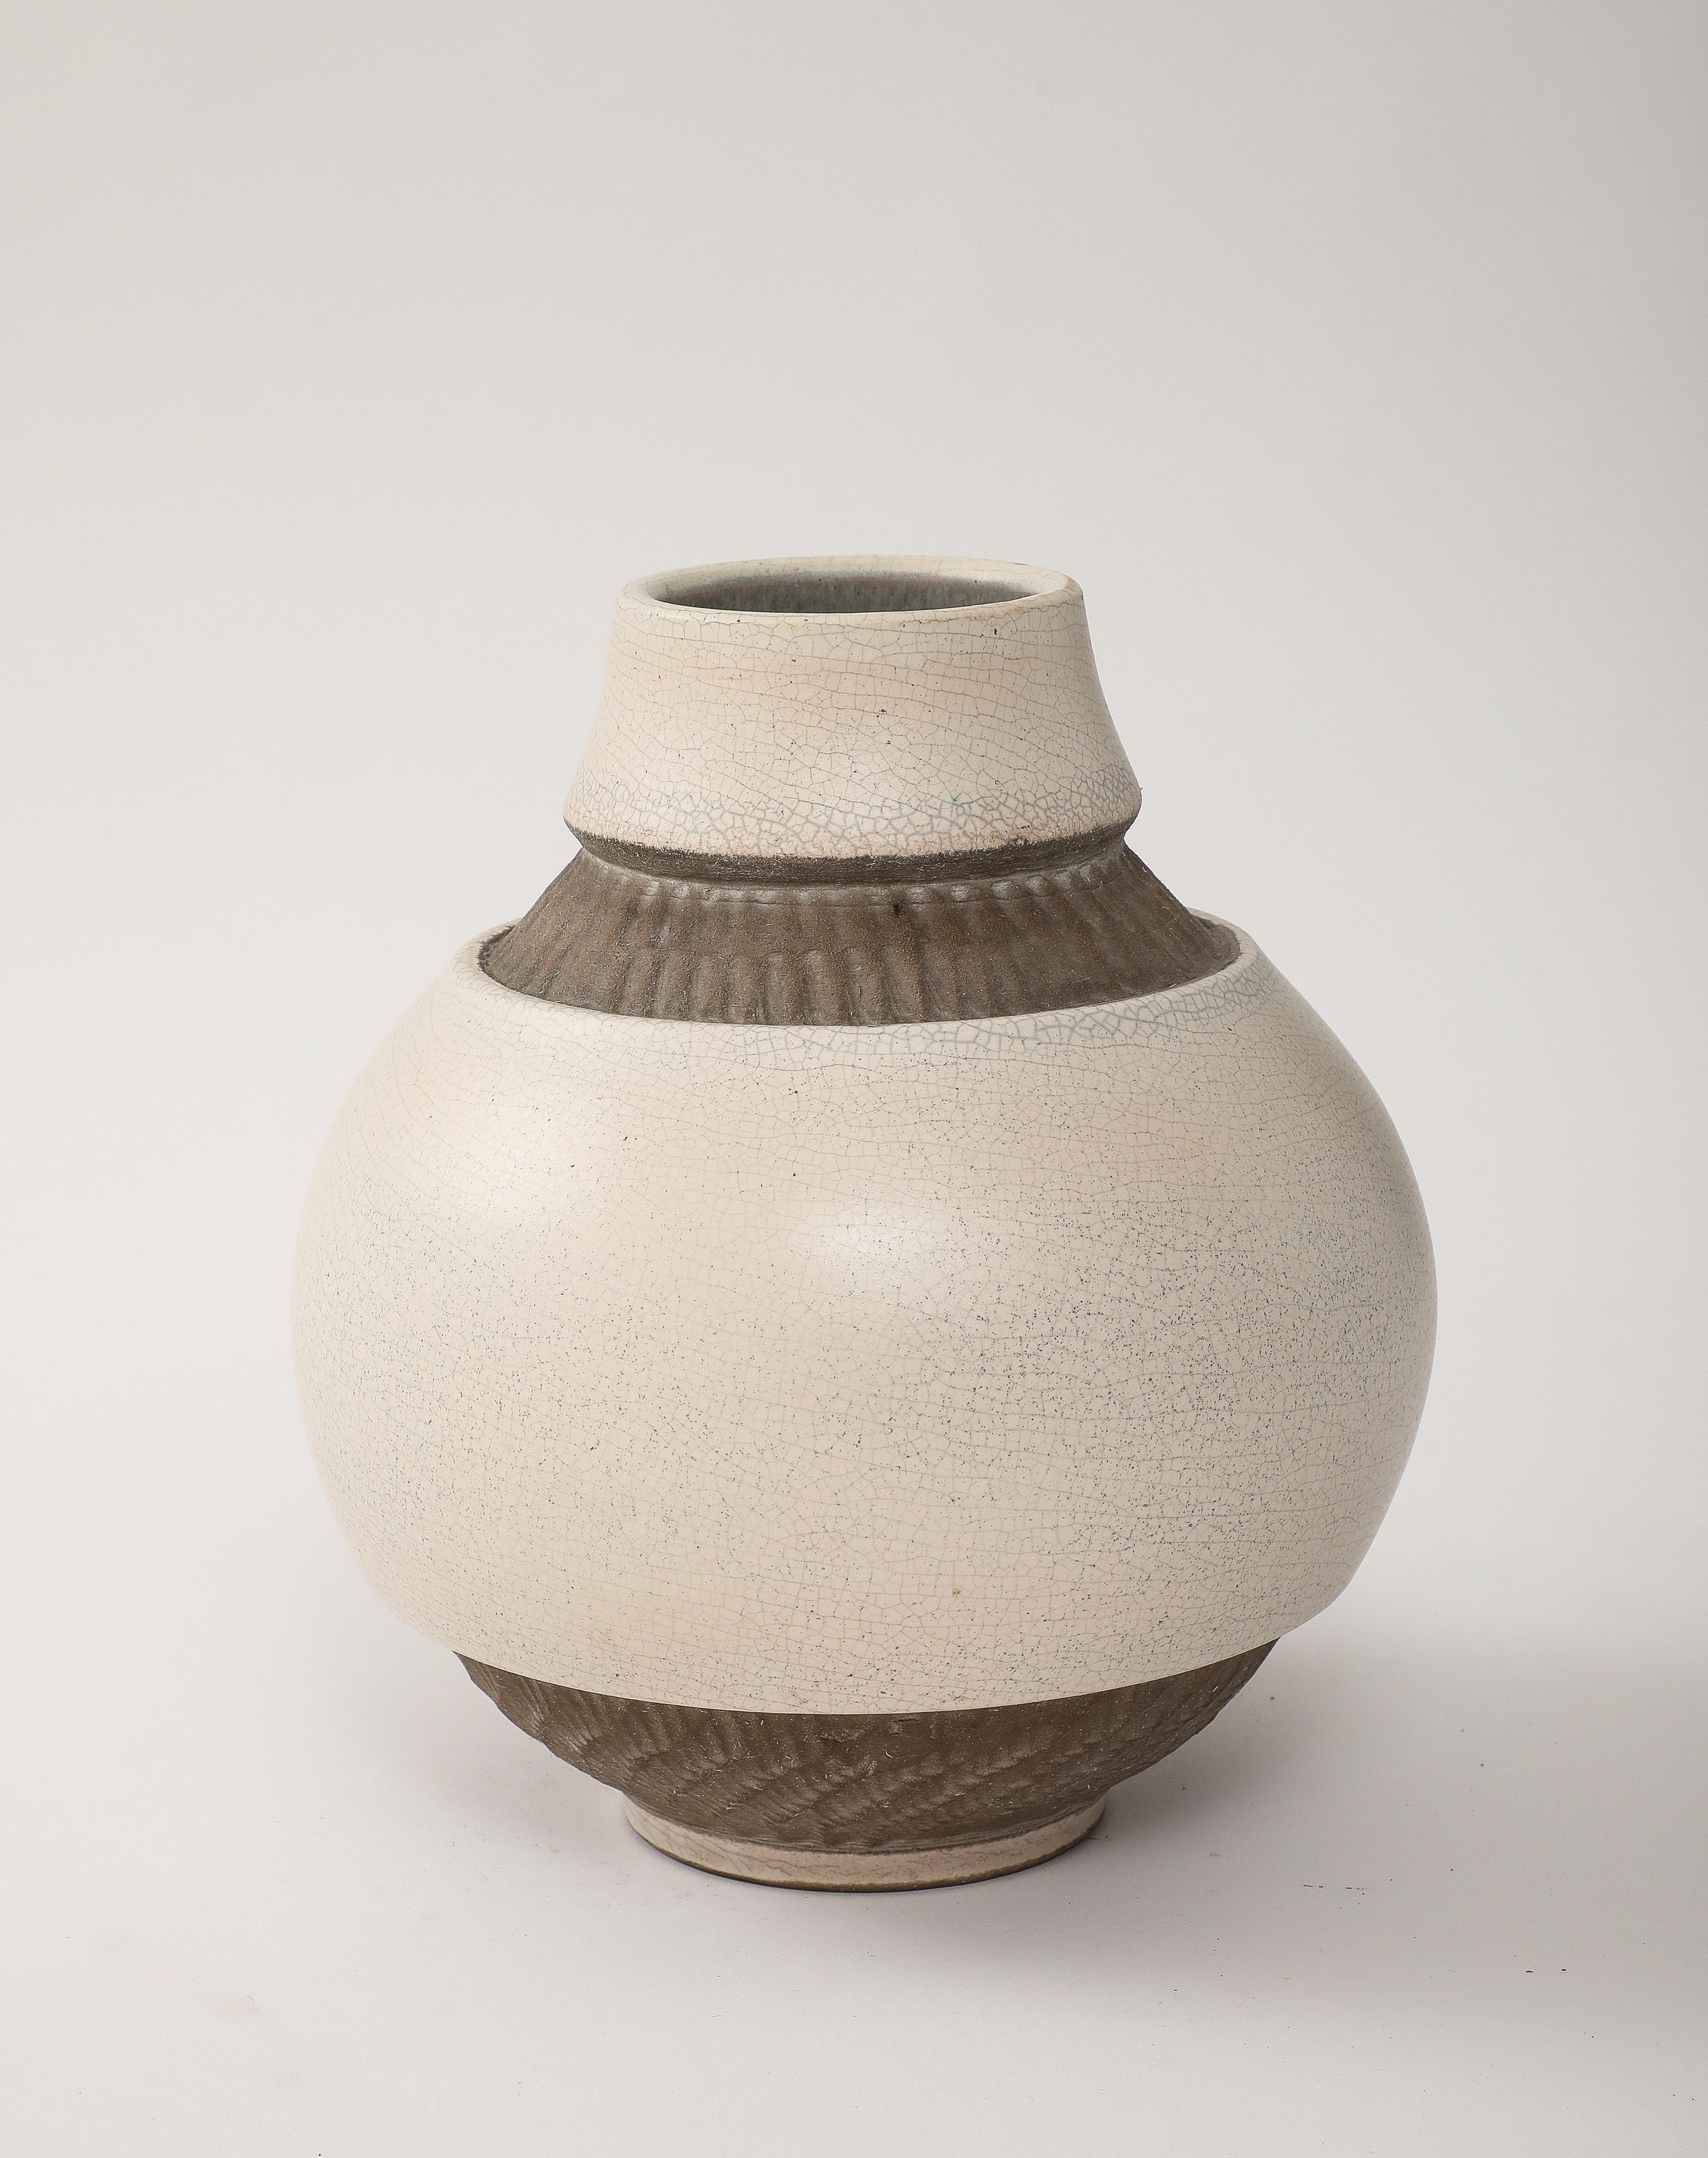 Große weiße Crackle-Vase mit afrikanisch inspirierten braunen Ritzbändern, gestempelt: 'Made in France'.
